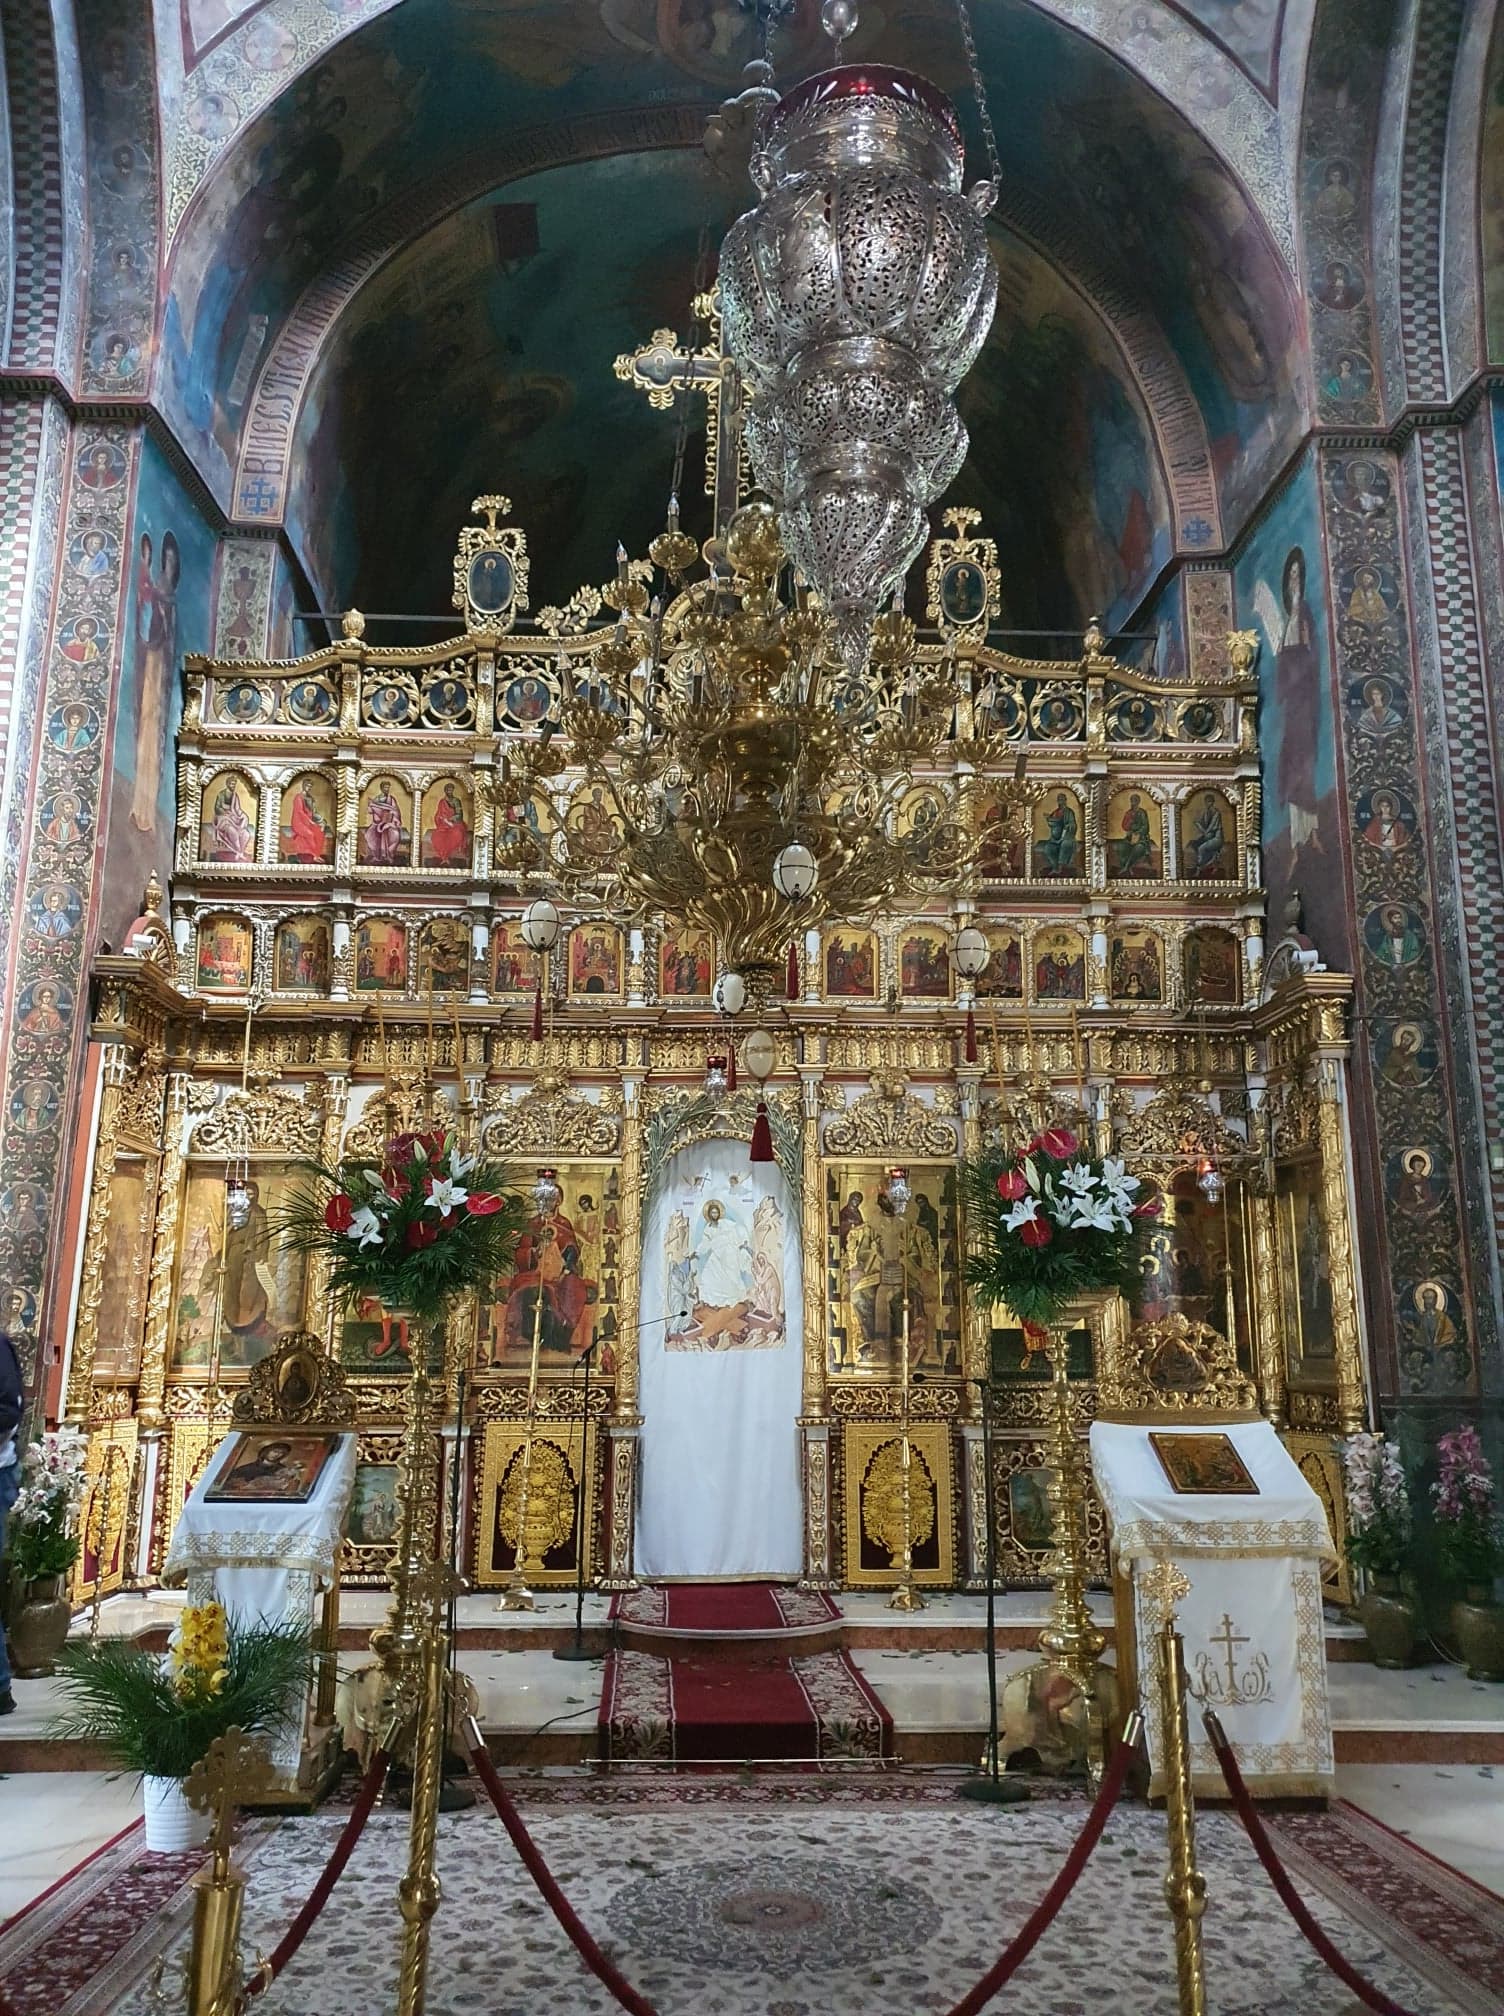 The golden iconostasis